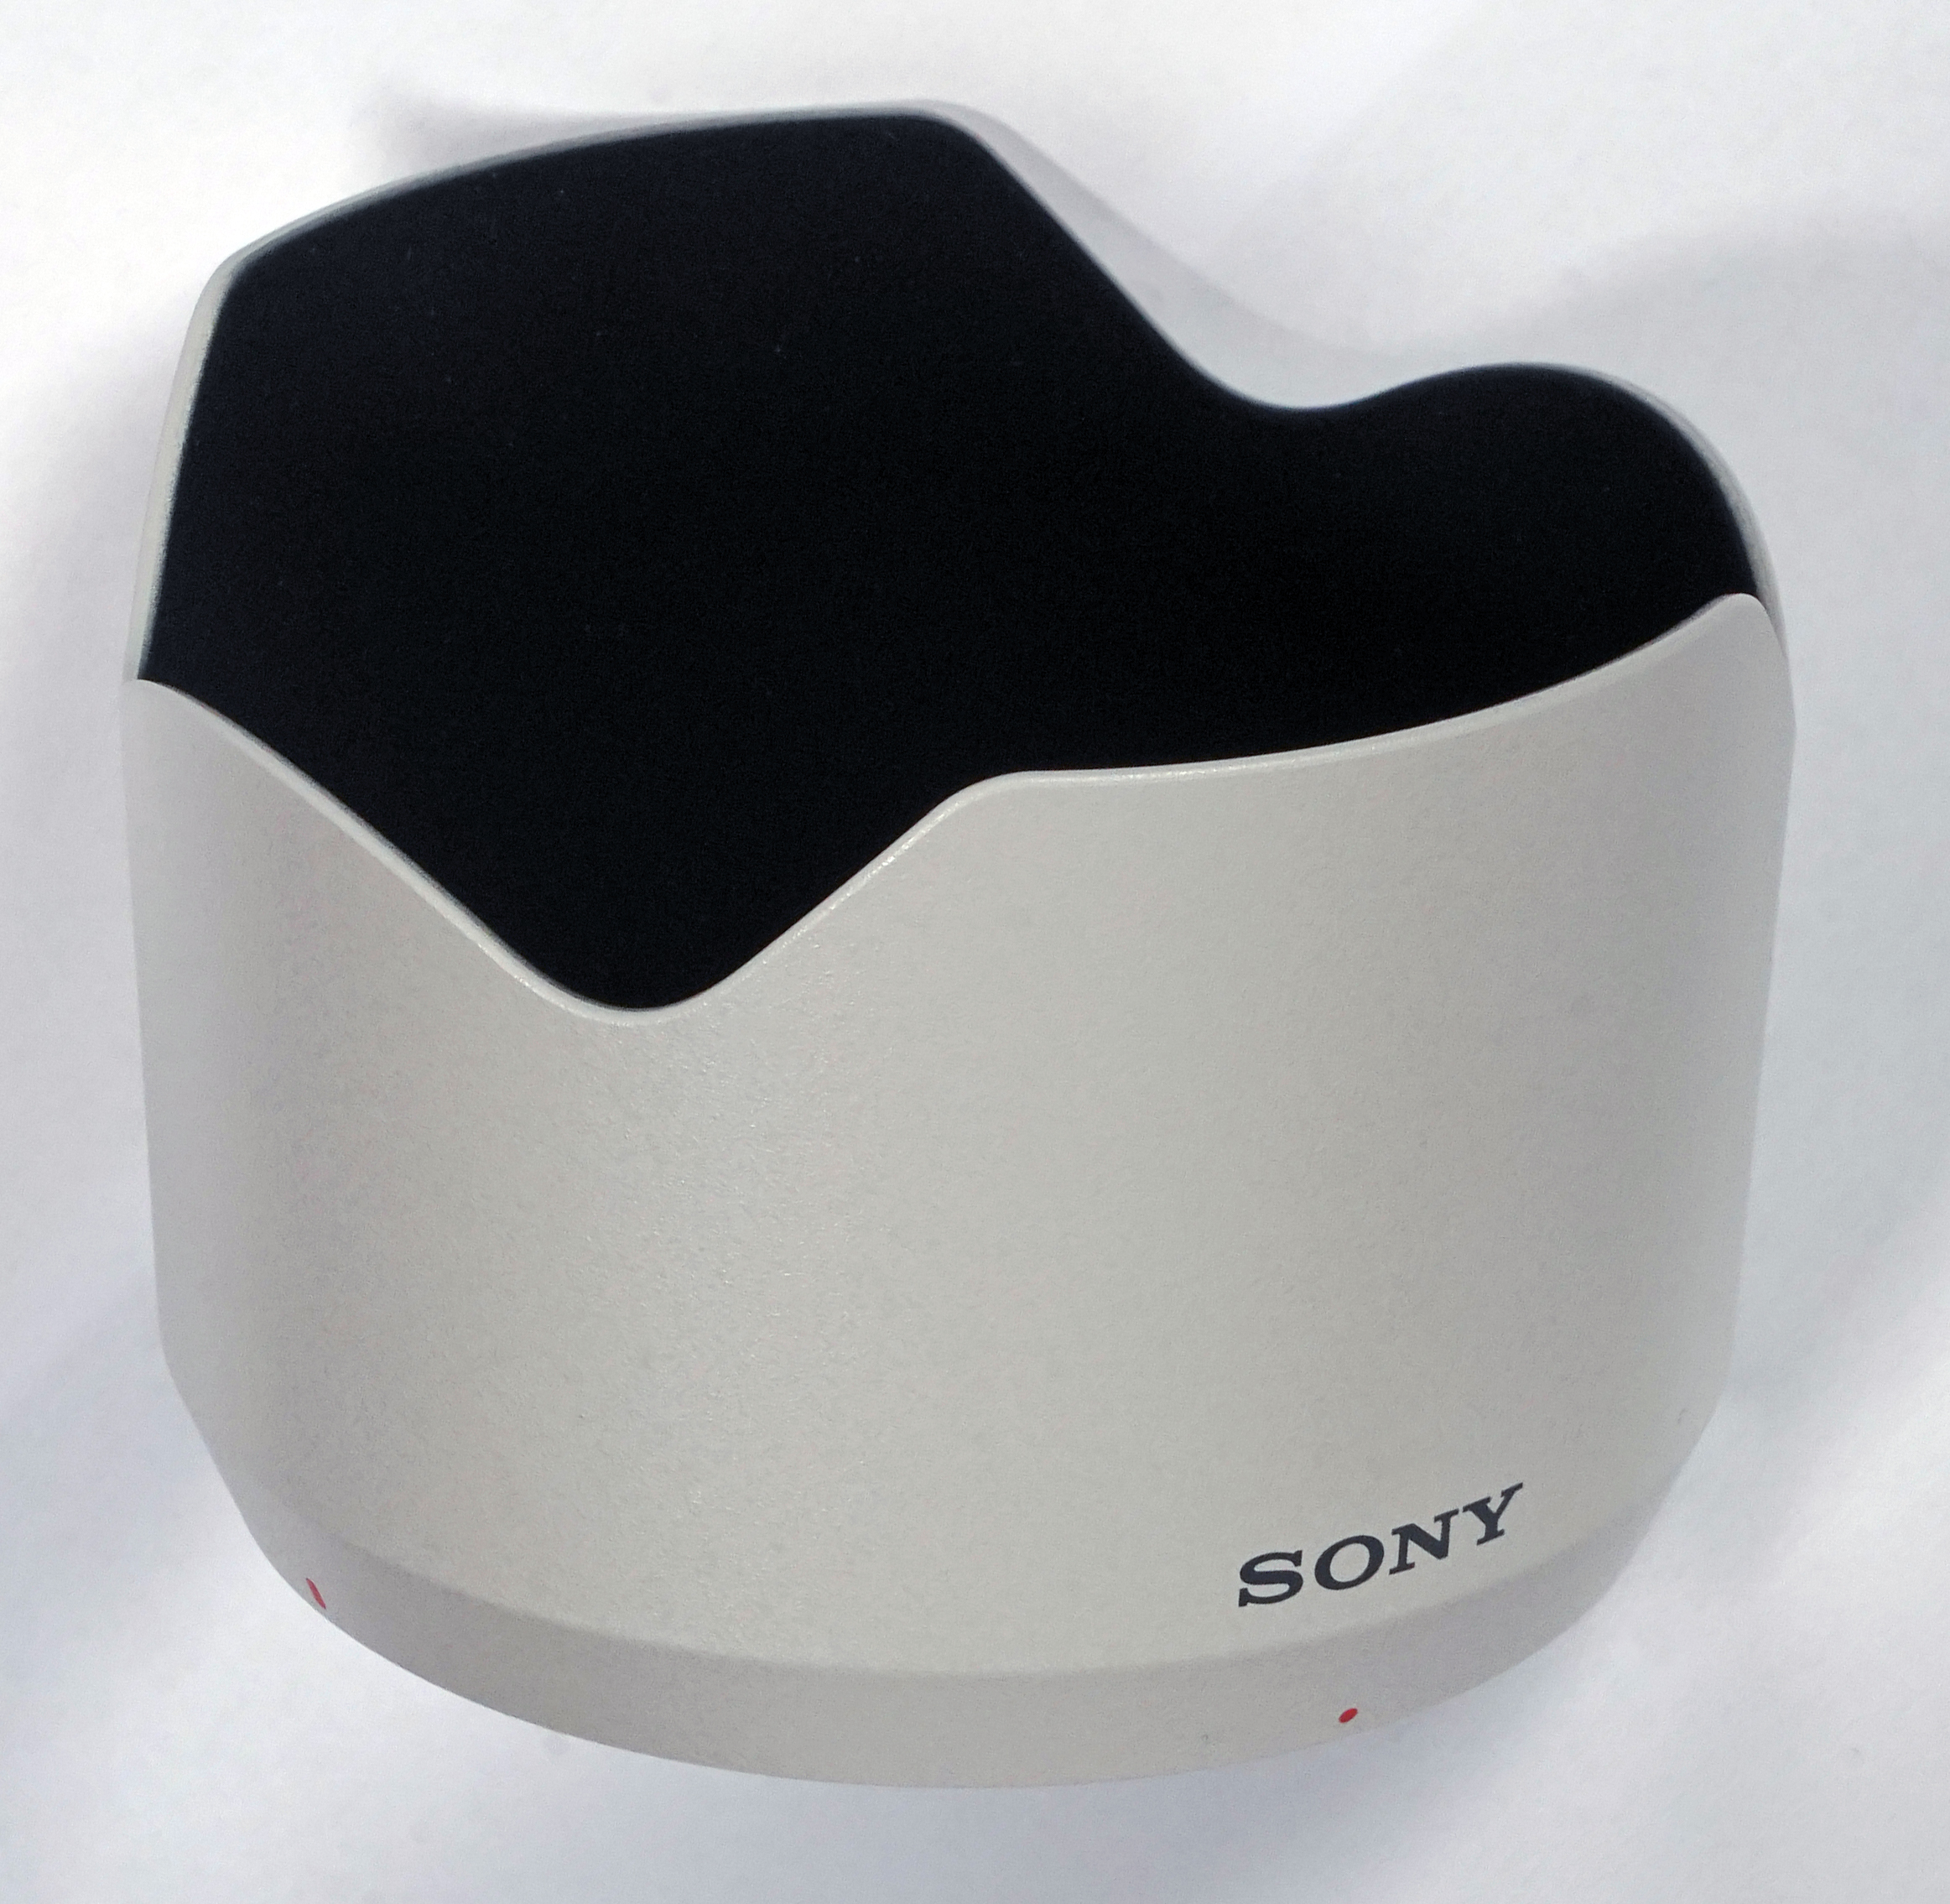 Die Streulichtblende zum Sony FE 4/70-200 mm G OSS II.